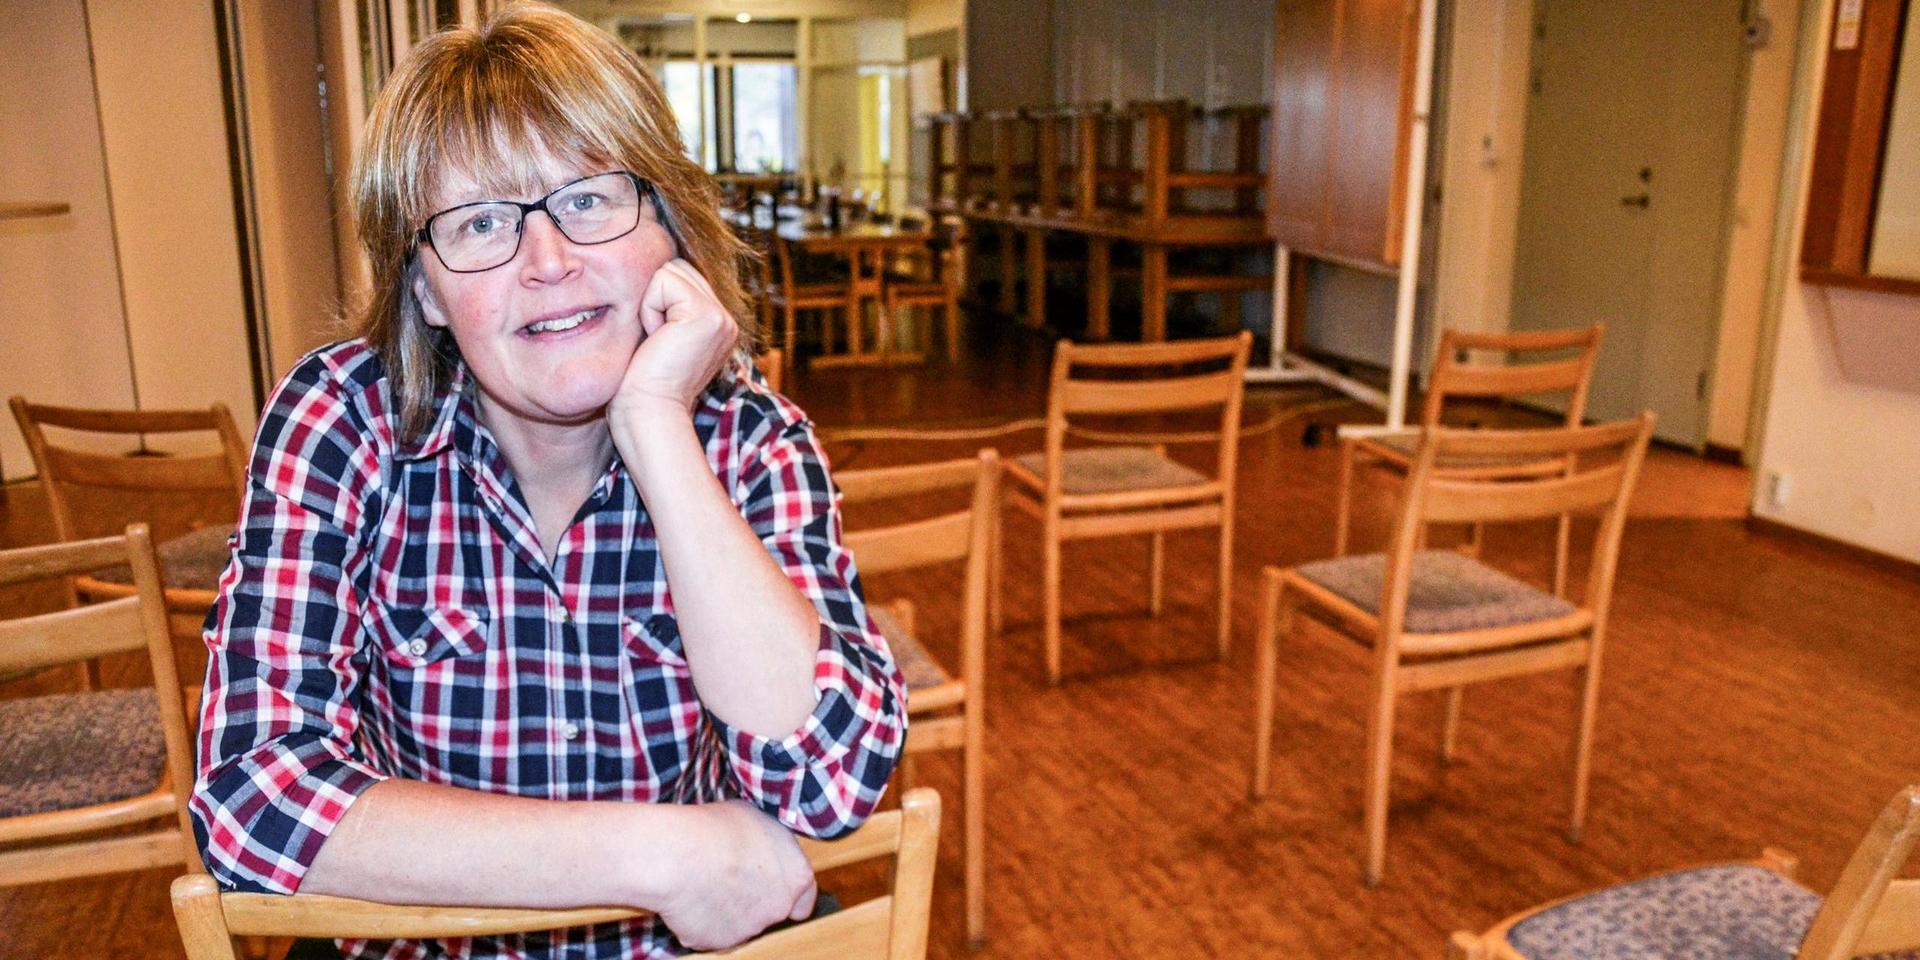 Kerstin Eliasson, jobbar ideellt i Alingsås Pingstförsamling. Hon kokar soppa och packar matkassar som delas ut till behövande när det är ”Öppen kyrka”.  Bland mycket annat som görs för att lindra nöden i stan.